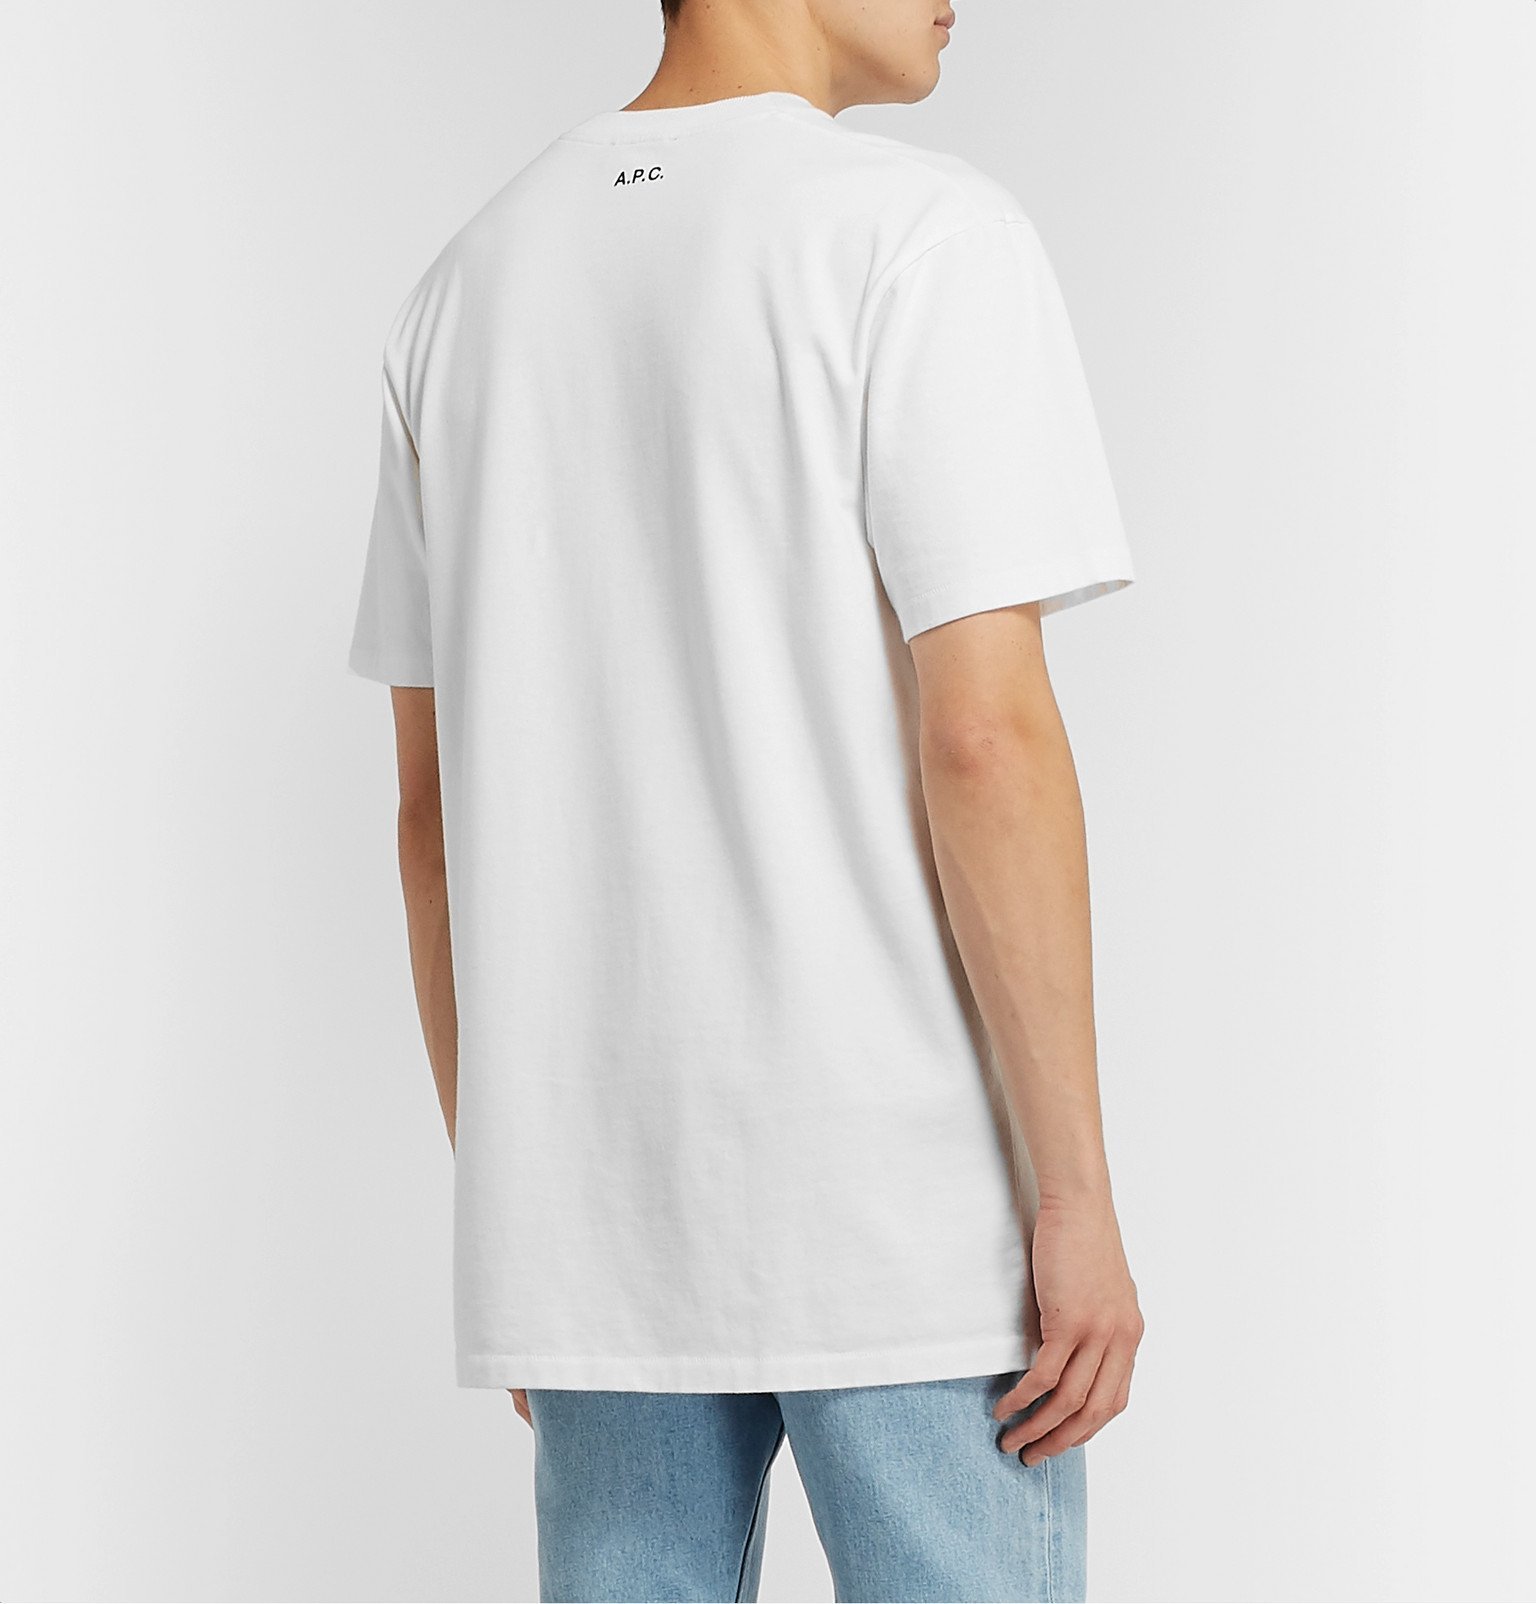 A.P.C. - JJJJound Logo-Print Cotton-Jersey T-Shirt - White A.P.C.